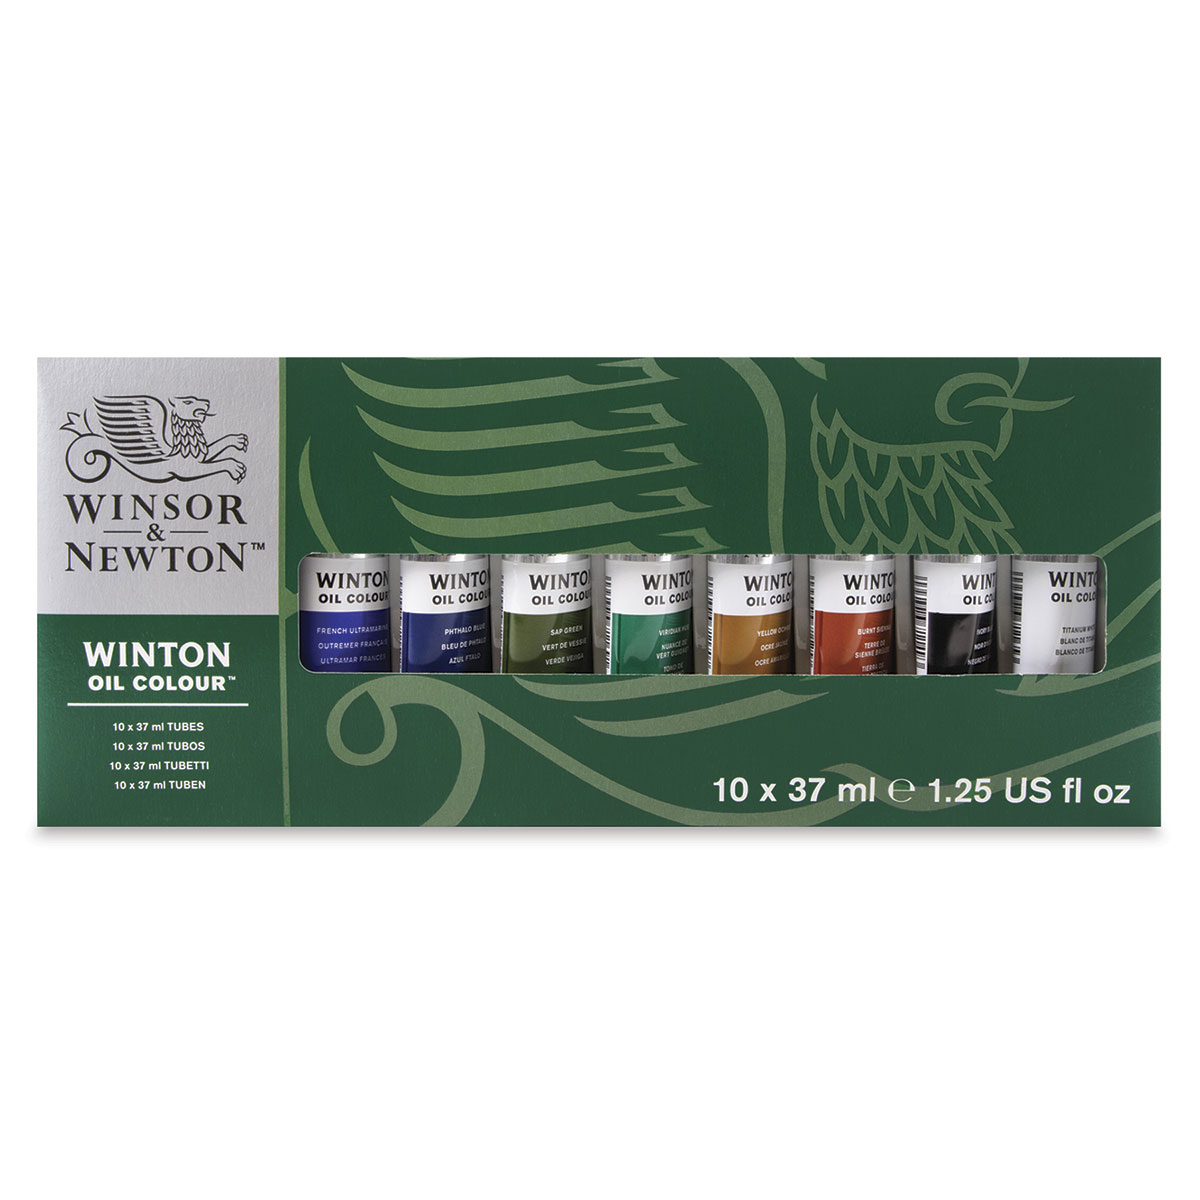  Winsor & Newton Winton Oil Color Paint Set, 20 x 12ml (0.4-oz)  Tubes